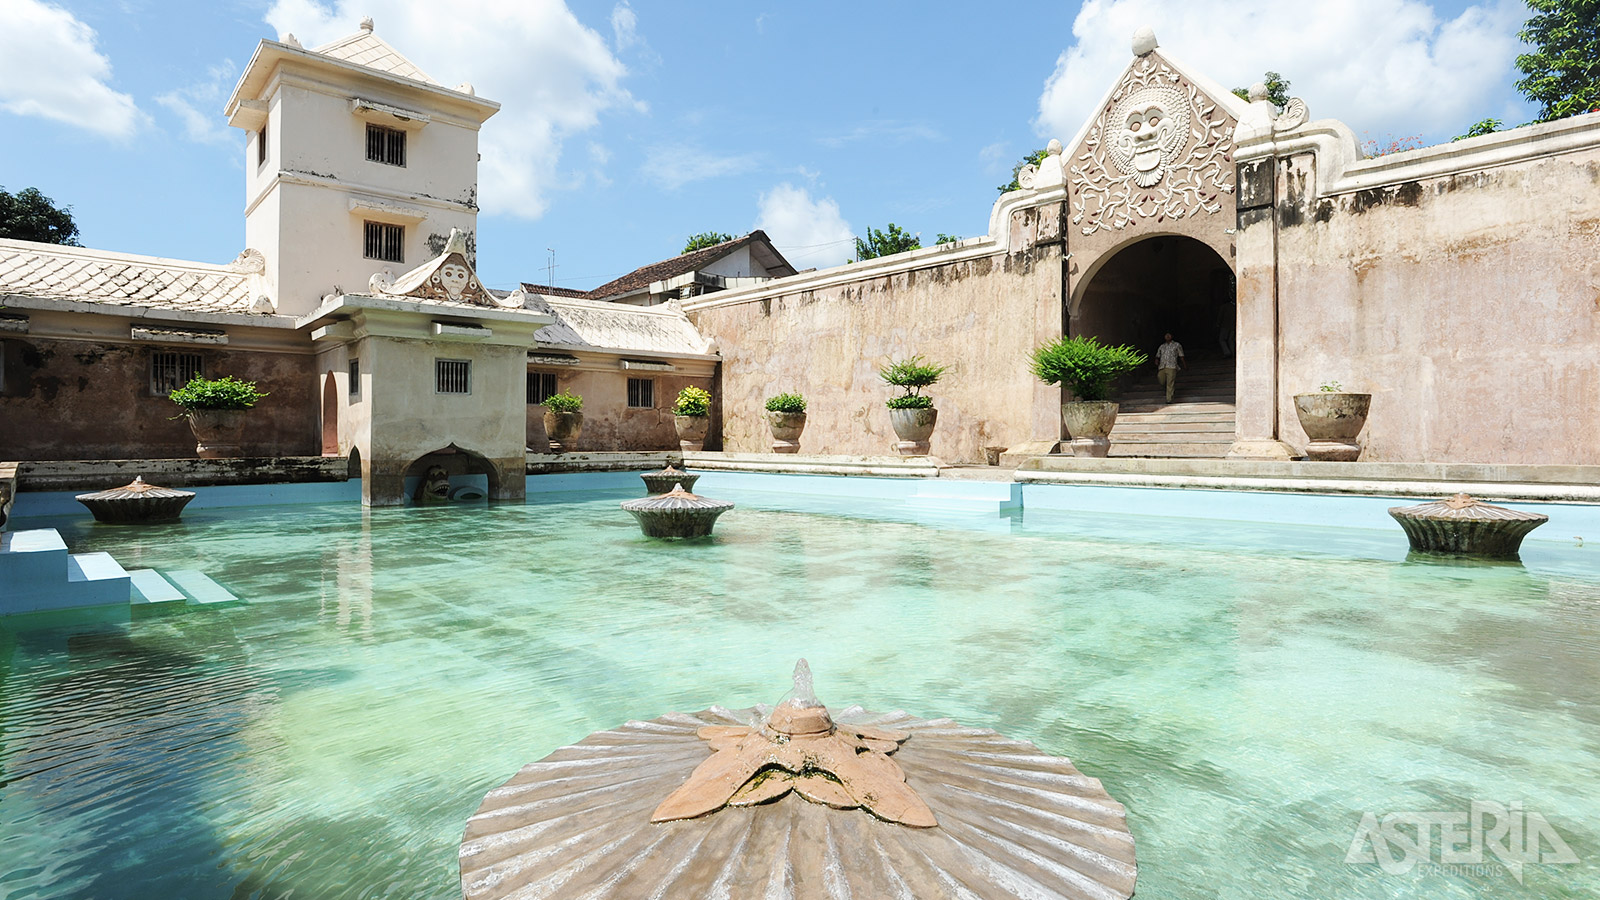 Taman Sari was ooit het badhuis van de sultan, compleet met prachtige zwembaden